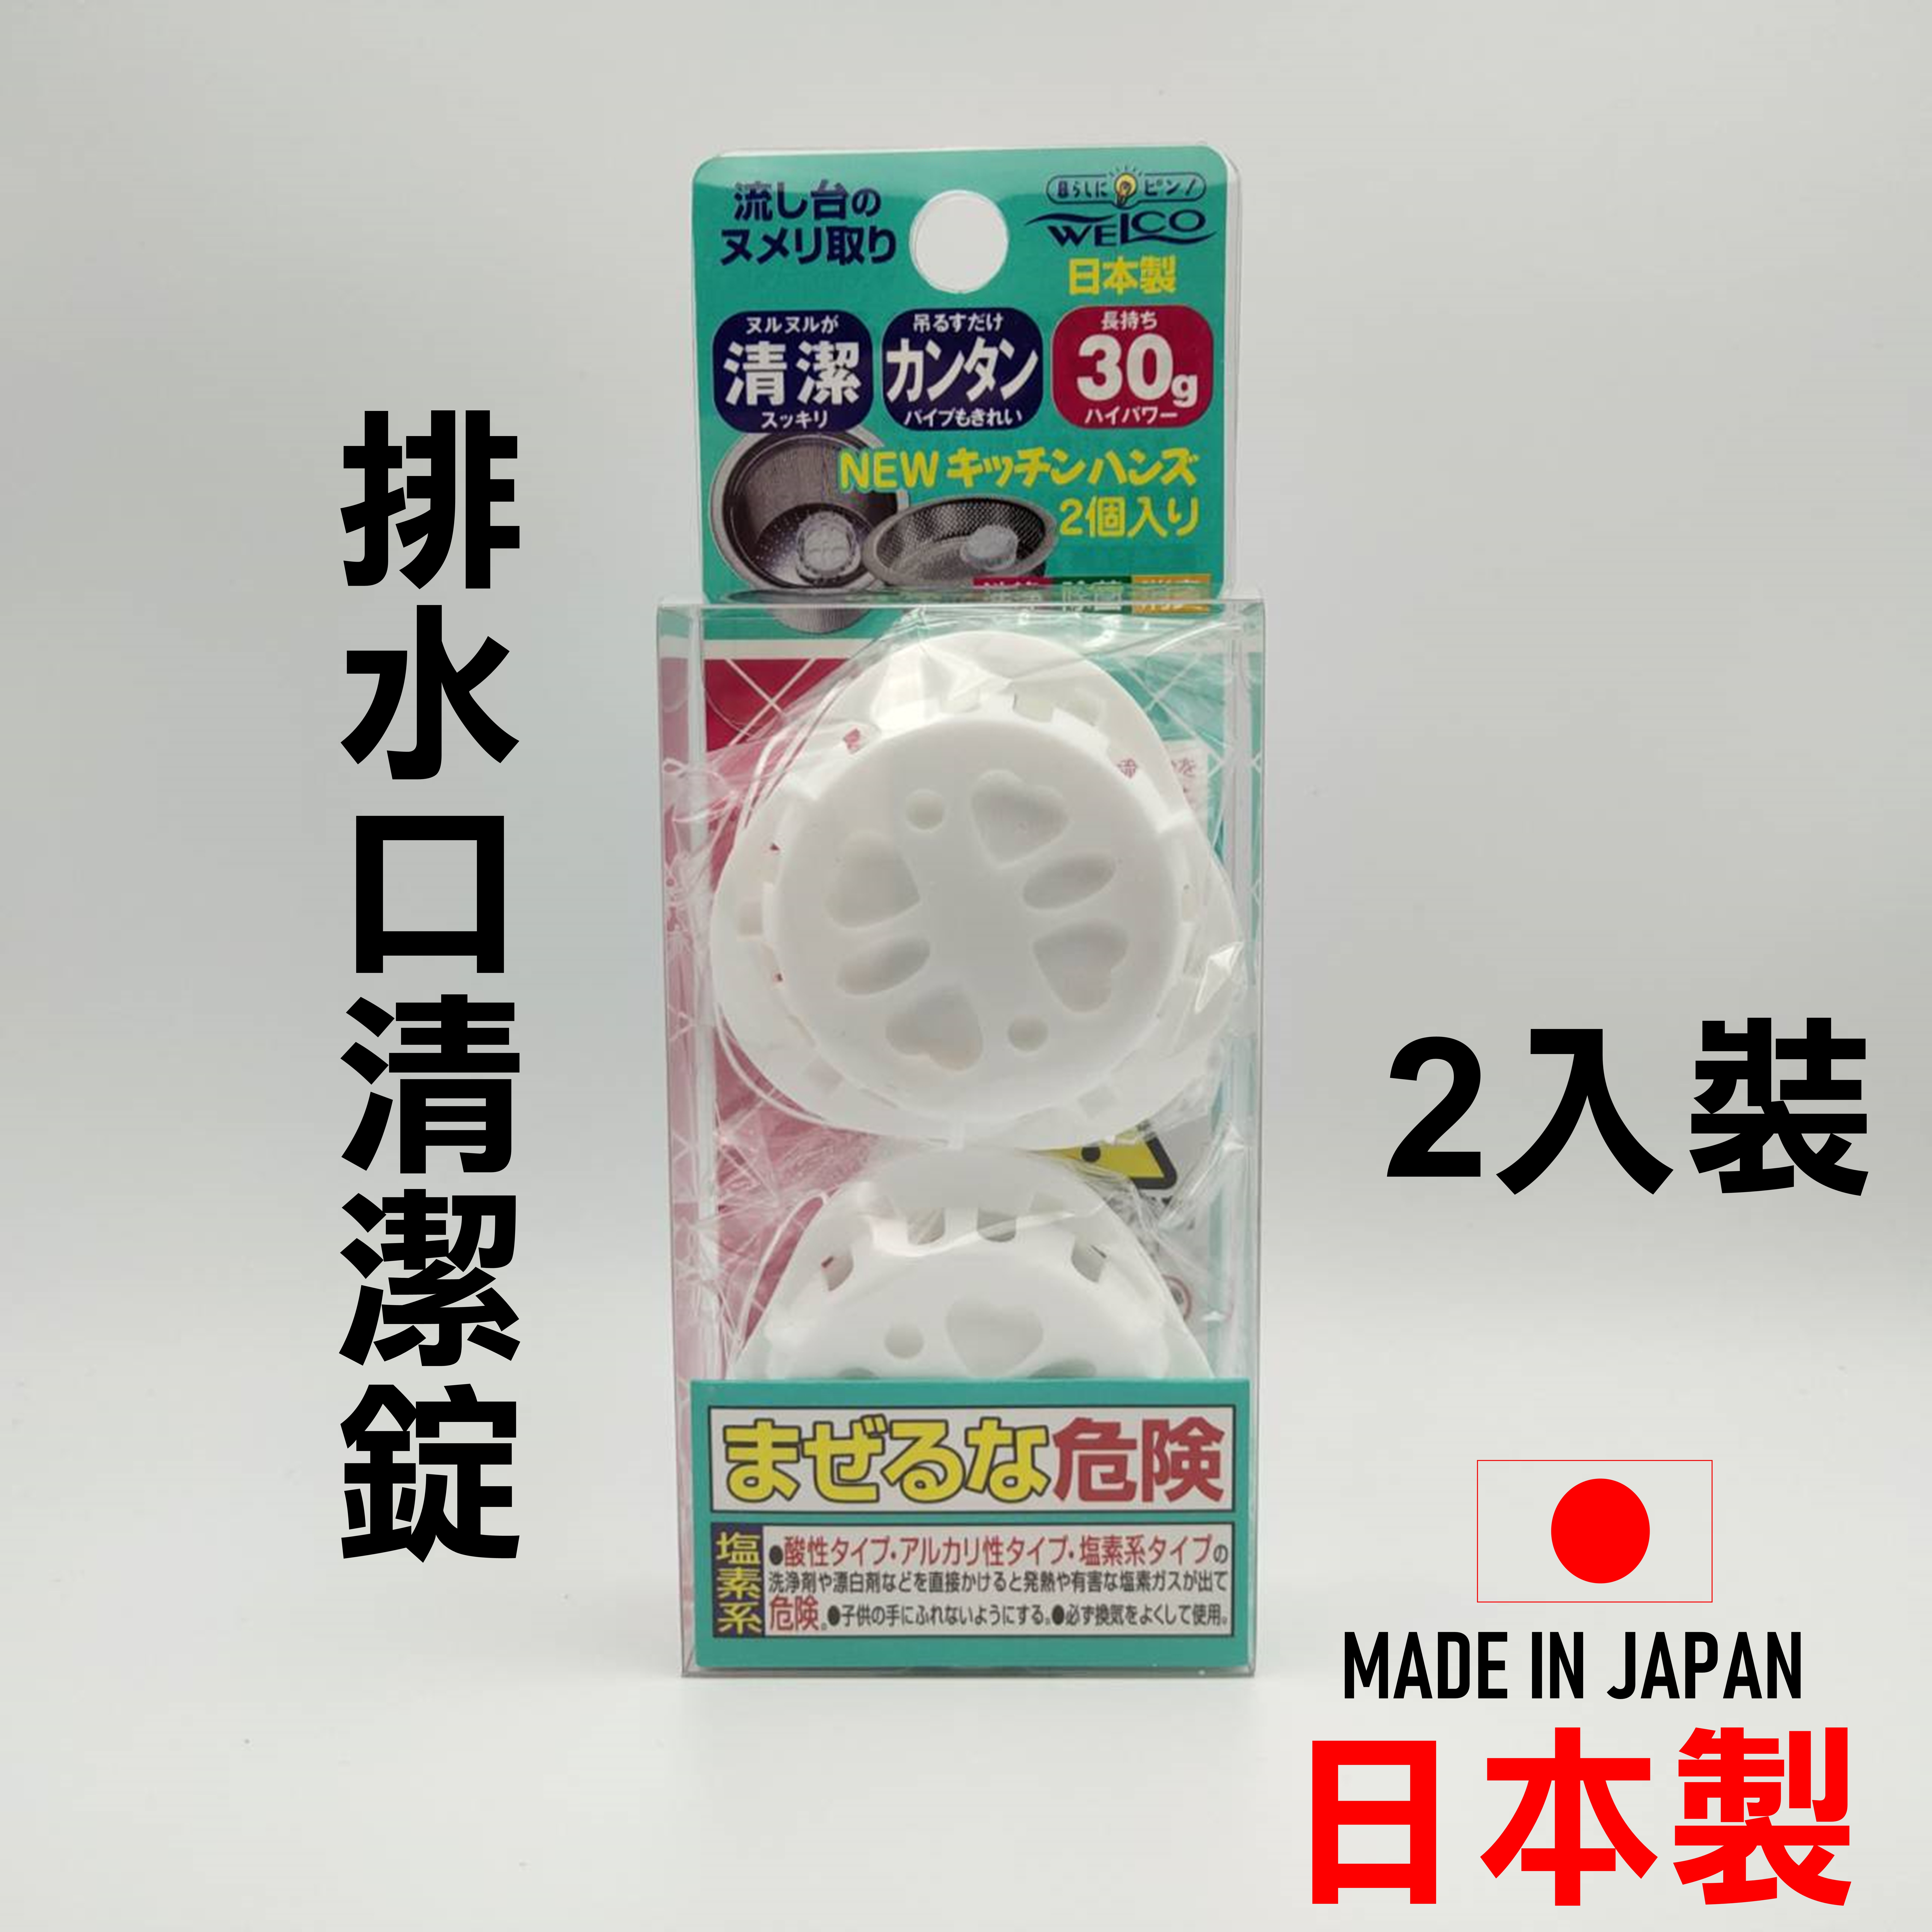 日本 排水口清潔錠 廚房水槽排水口清潔錠 排水孔清潔 廚房清潔 除菌 2錠裝